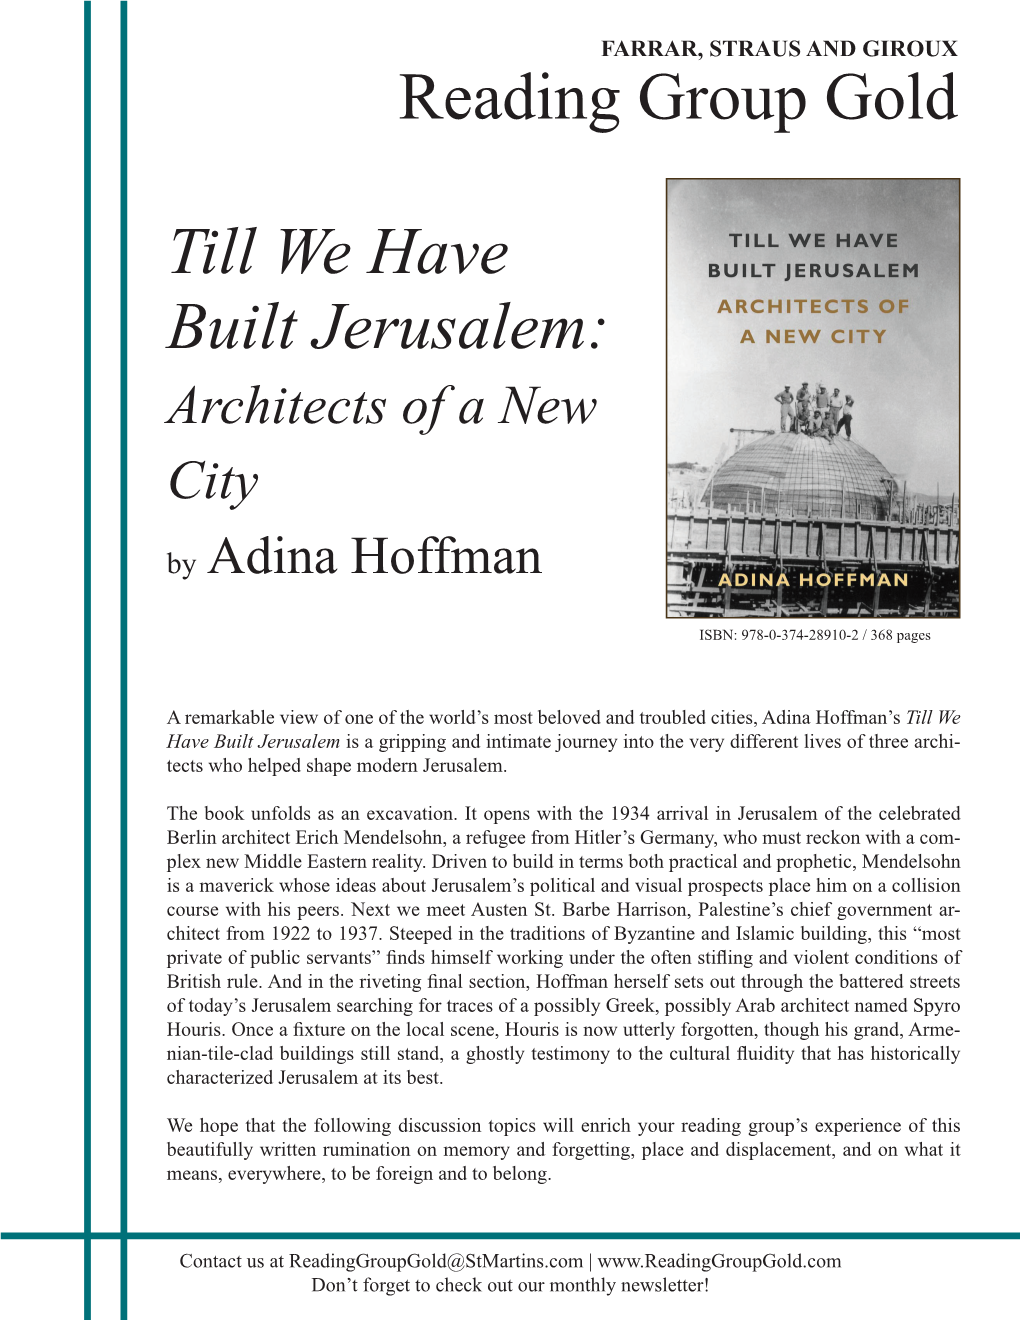 Till We Have Built Jerusalem: Reading Group Gold